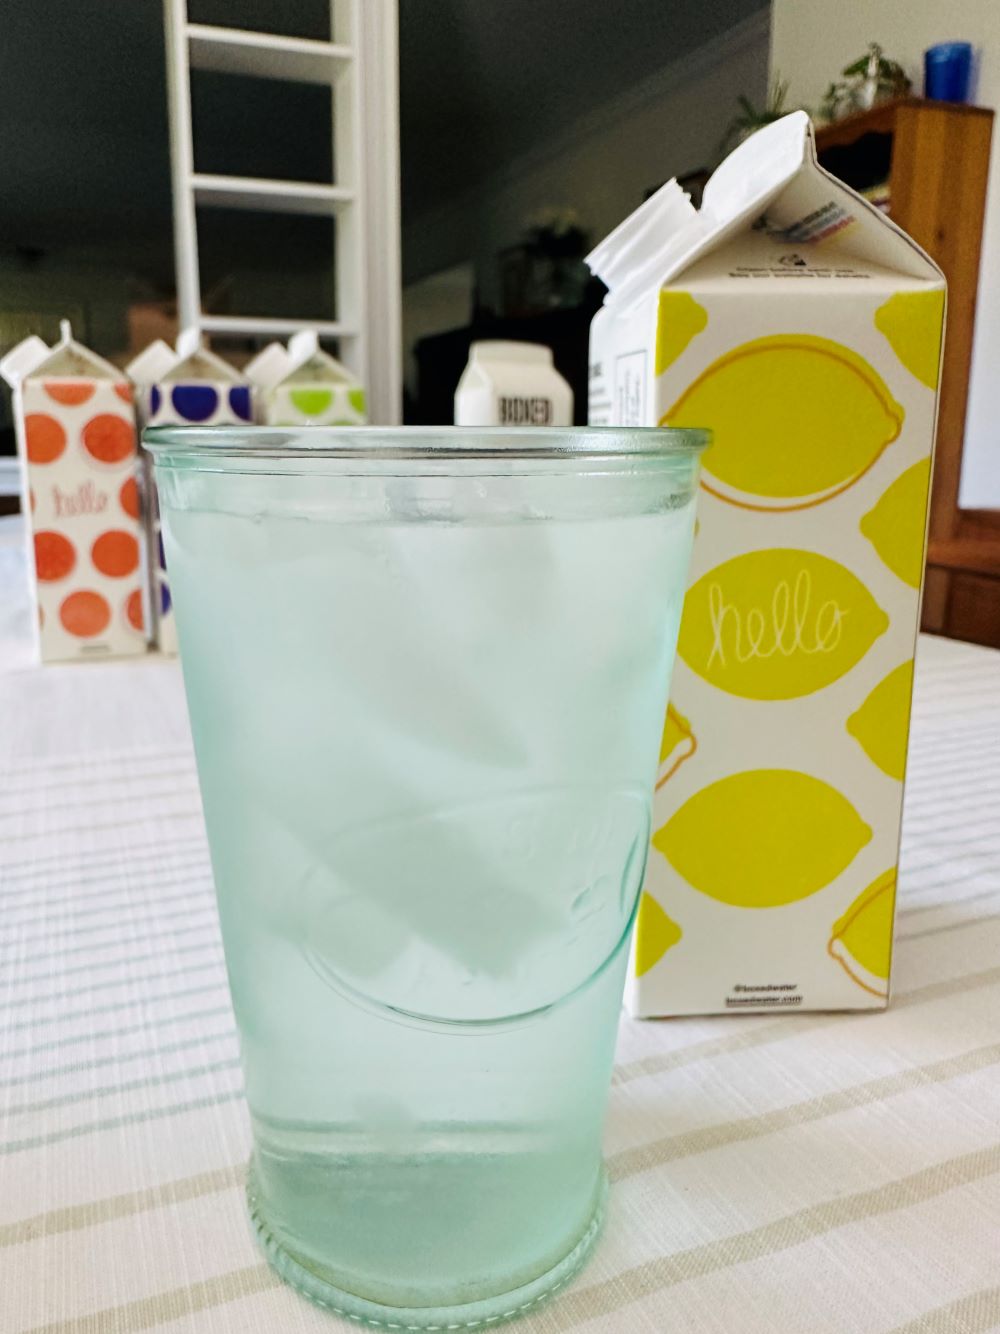 Tasty glass of Boxed Lemon Water